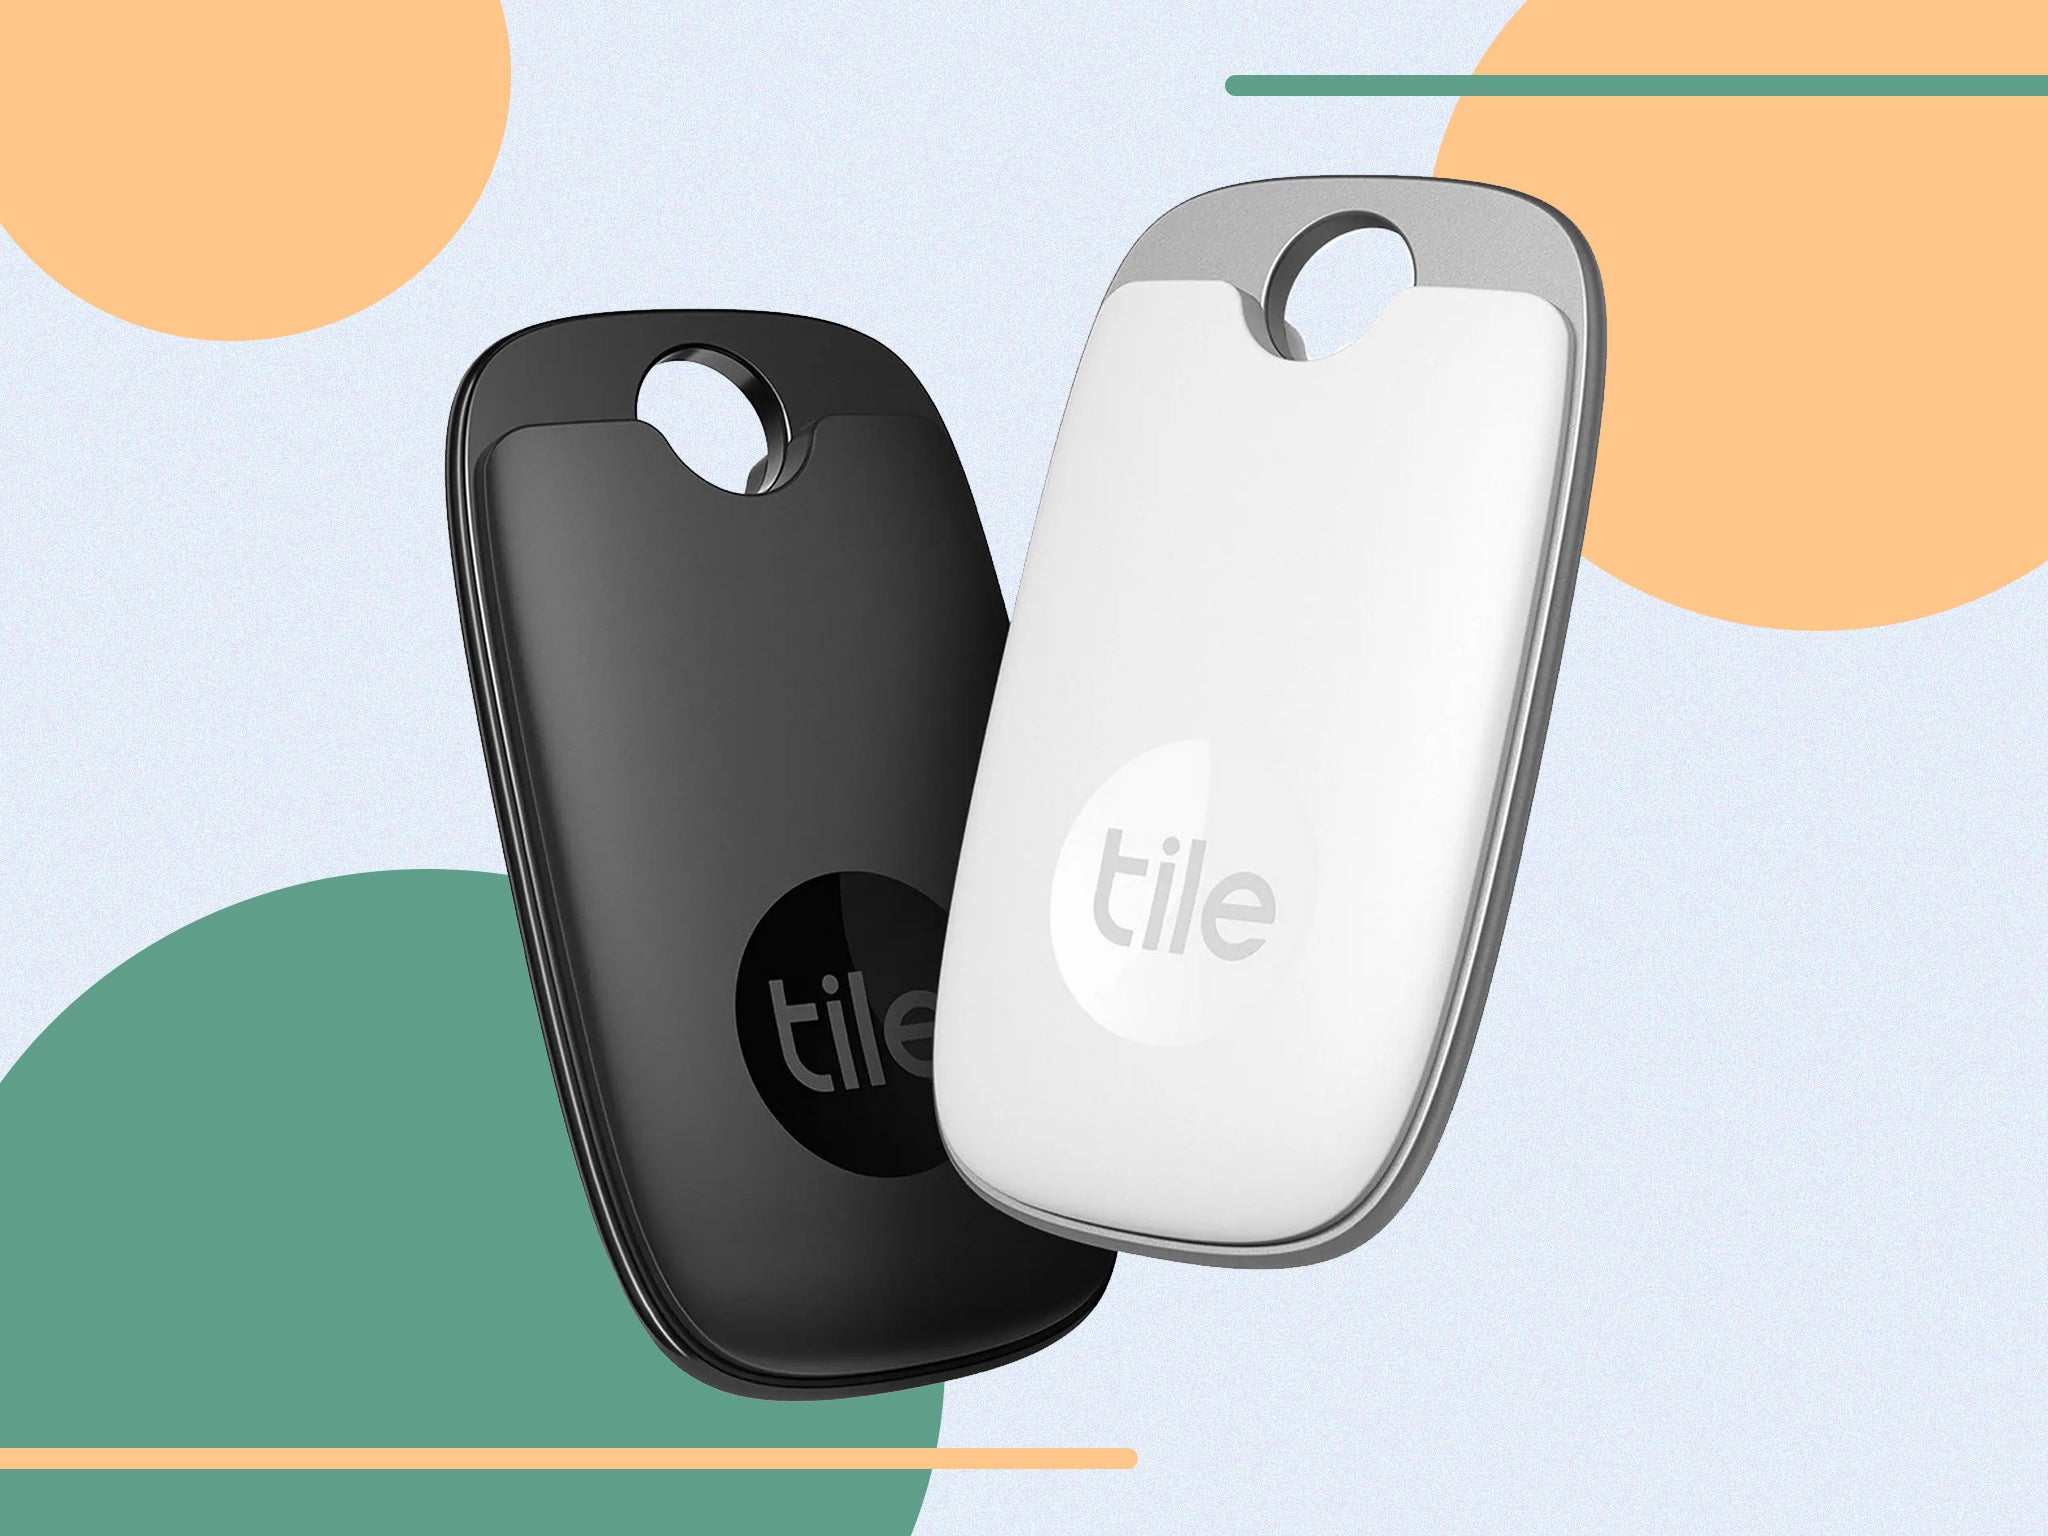 Tile introduces new key finders: Tile Pro vs. Tile Mate vs. Tile